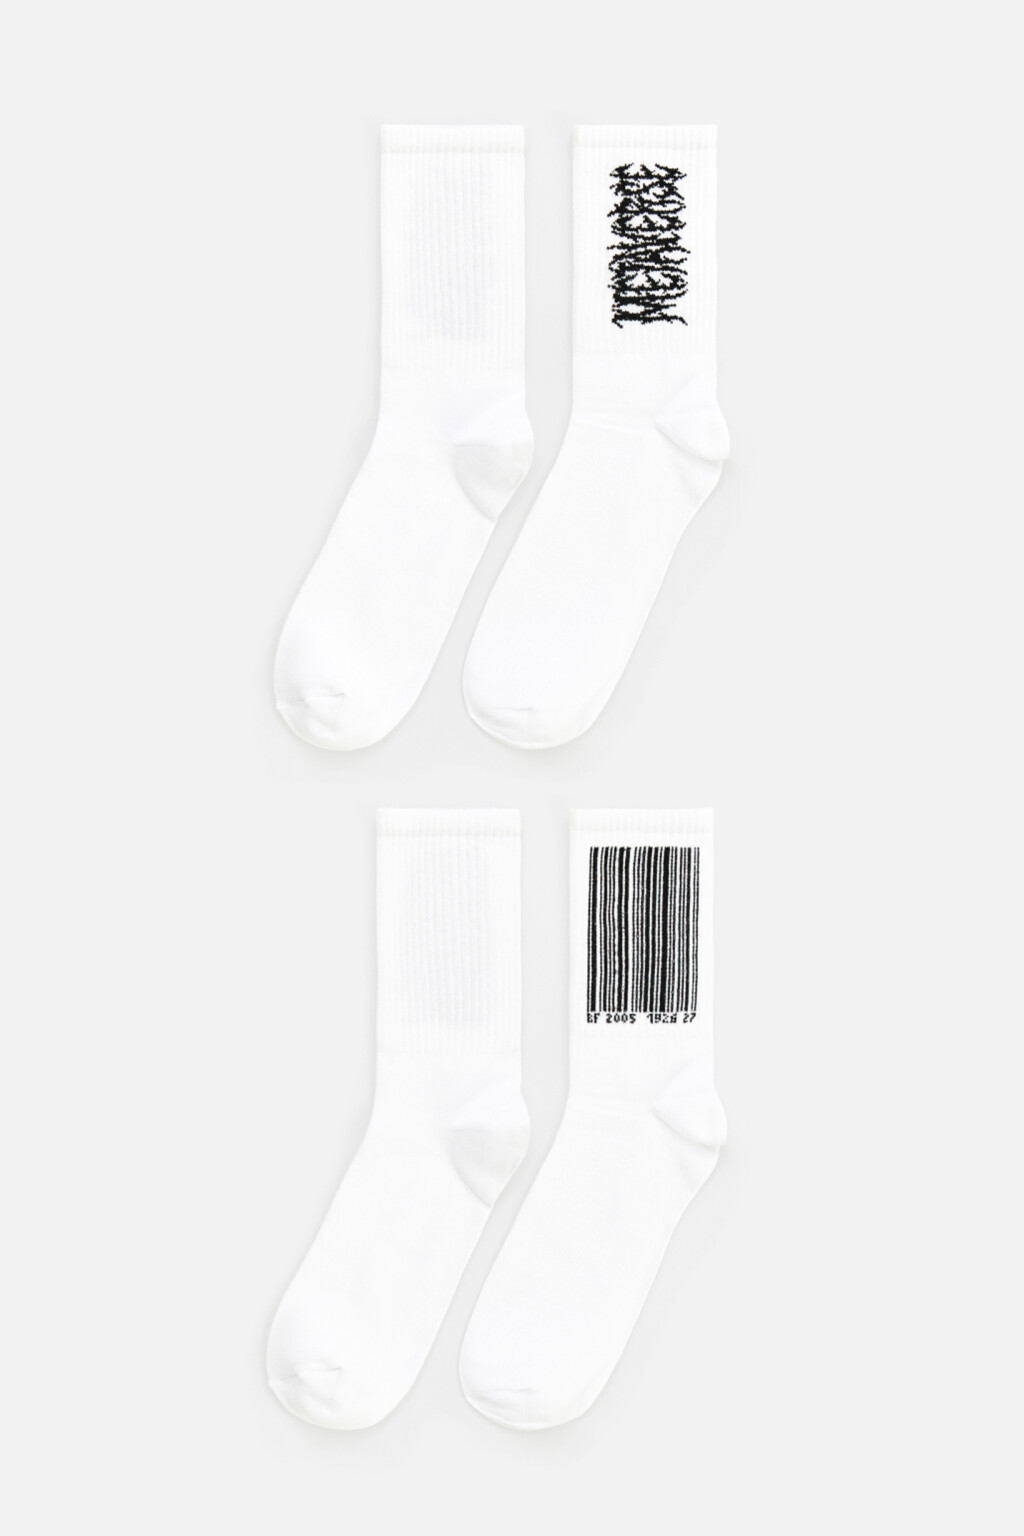 набор носков для мужчин